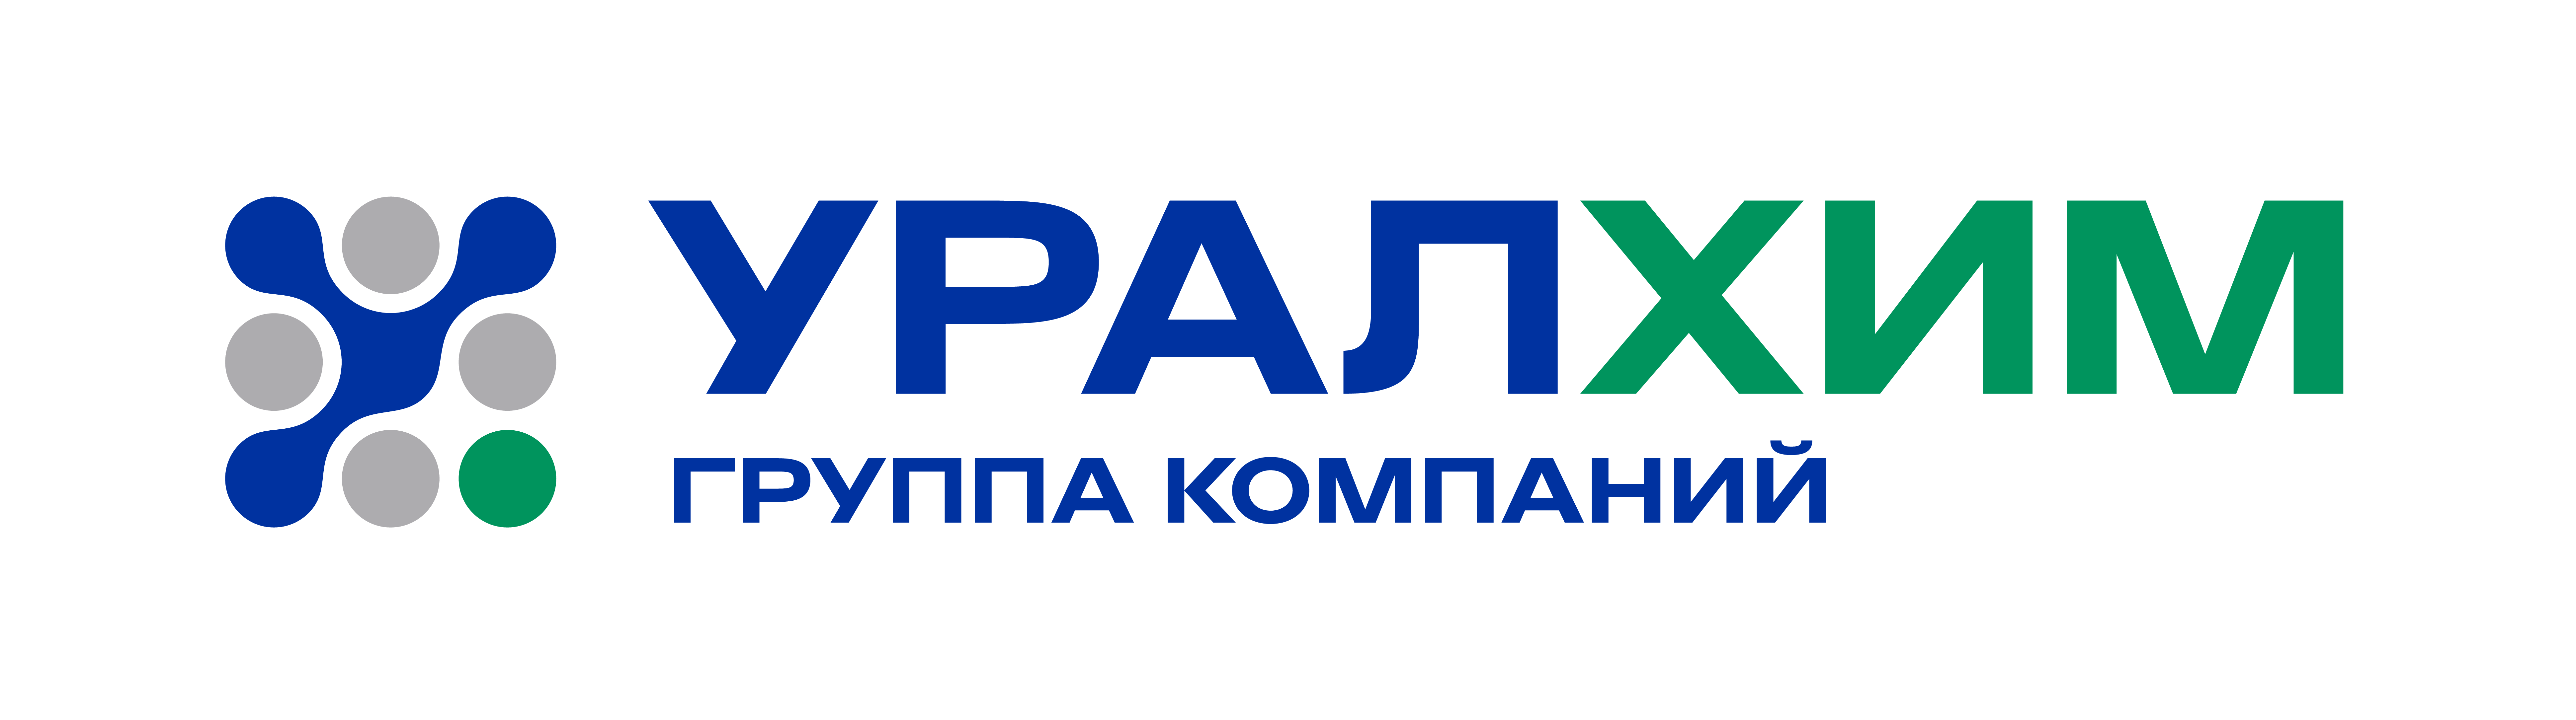 logo 2.png